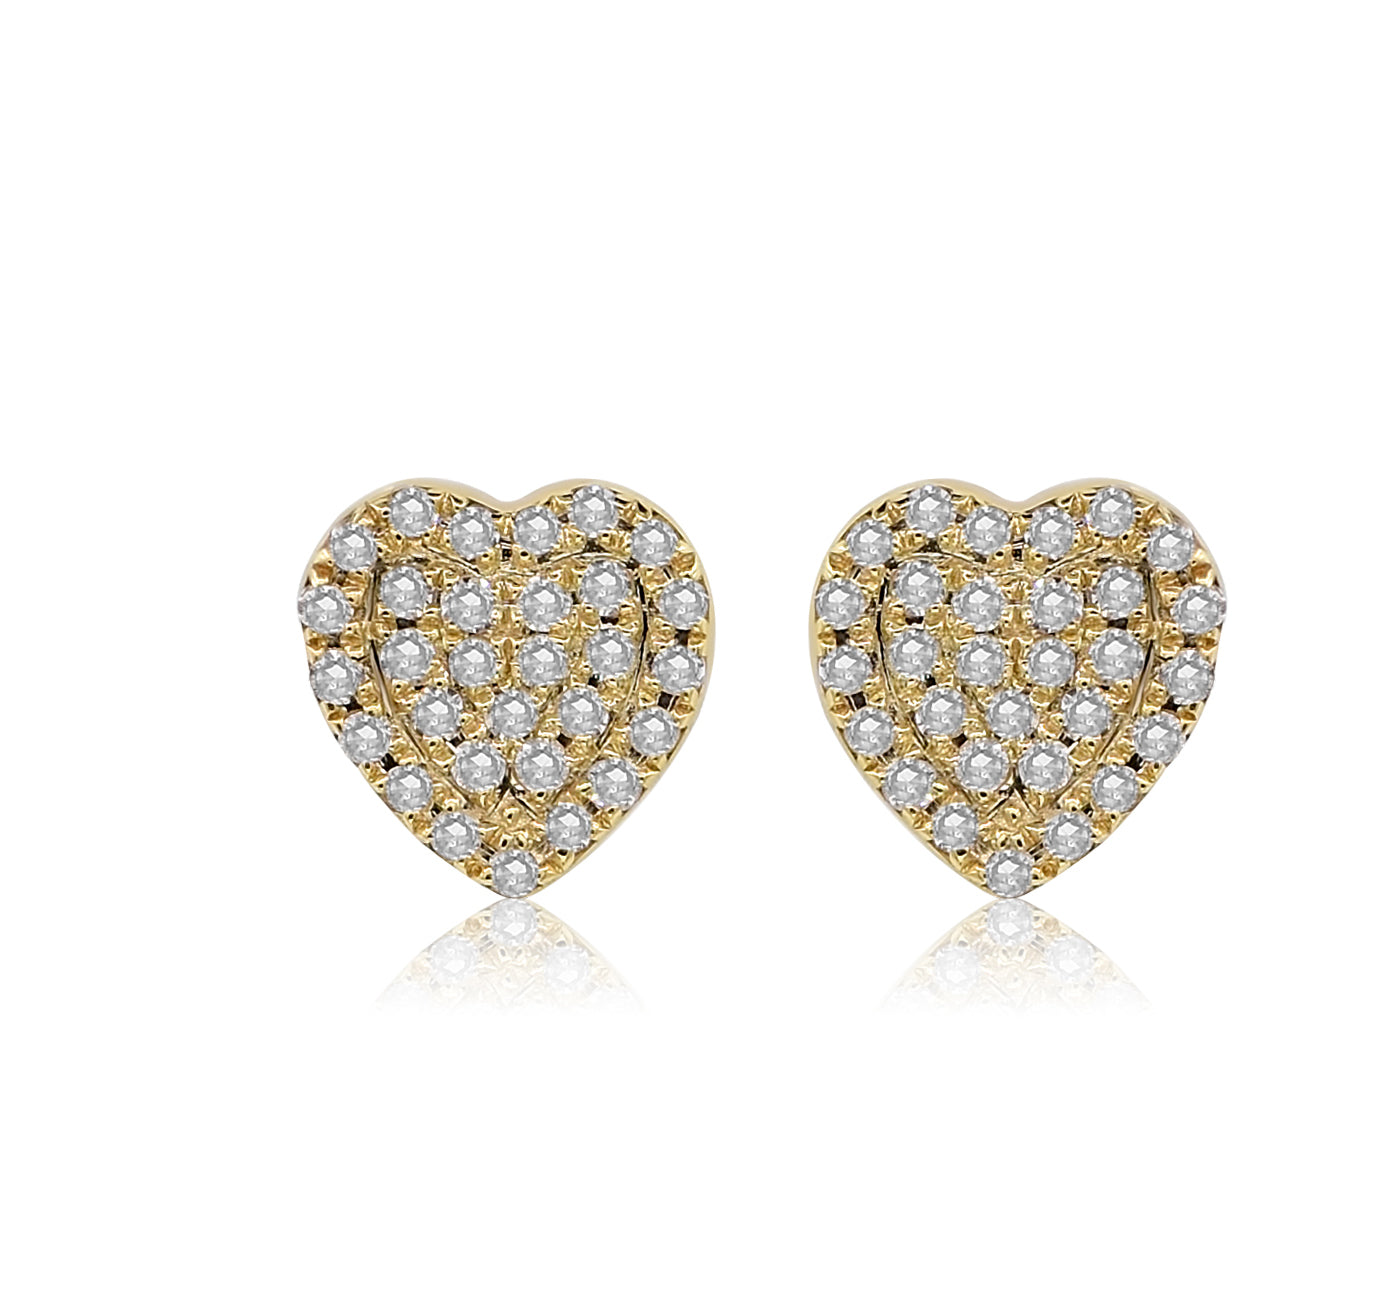 Heart 14k Yellow Gold Stud Earrings in White Diamonds